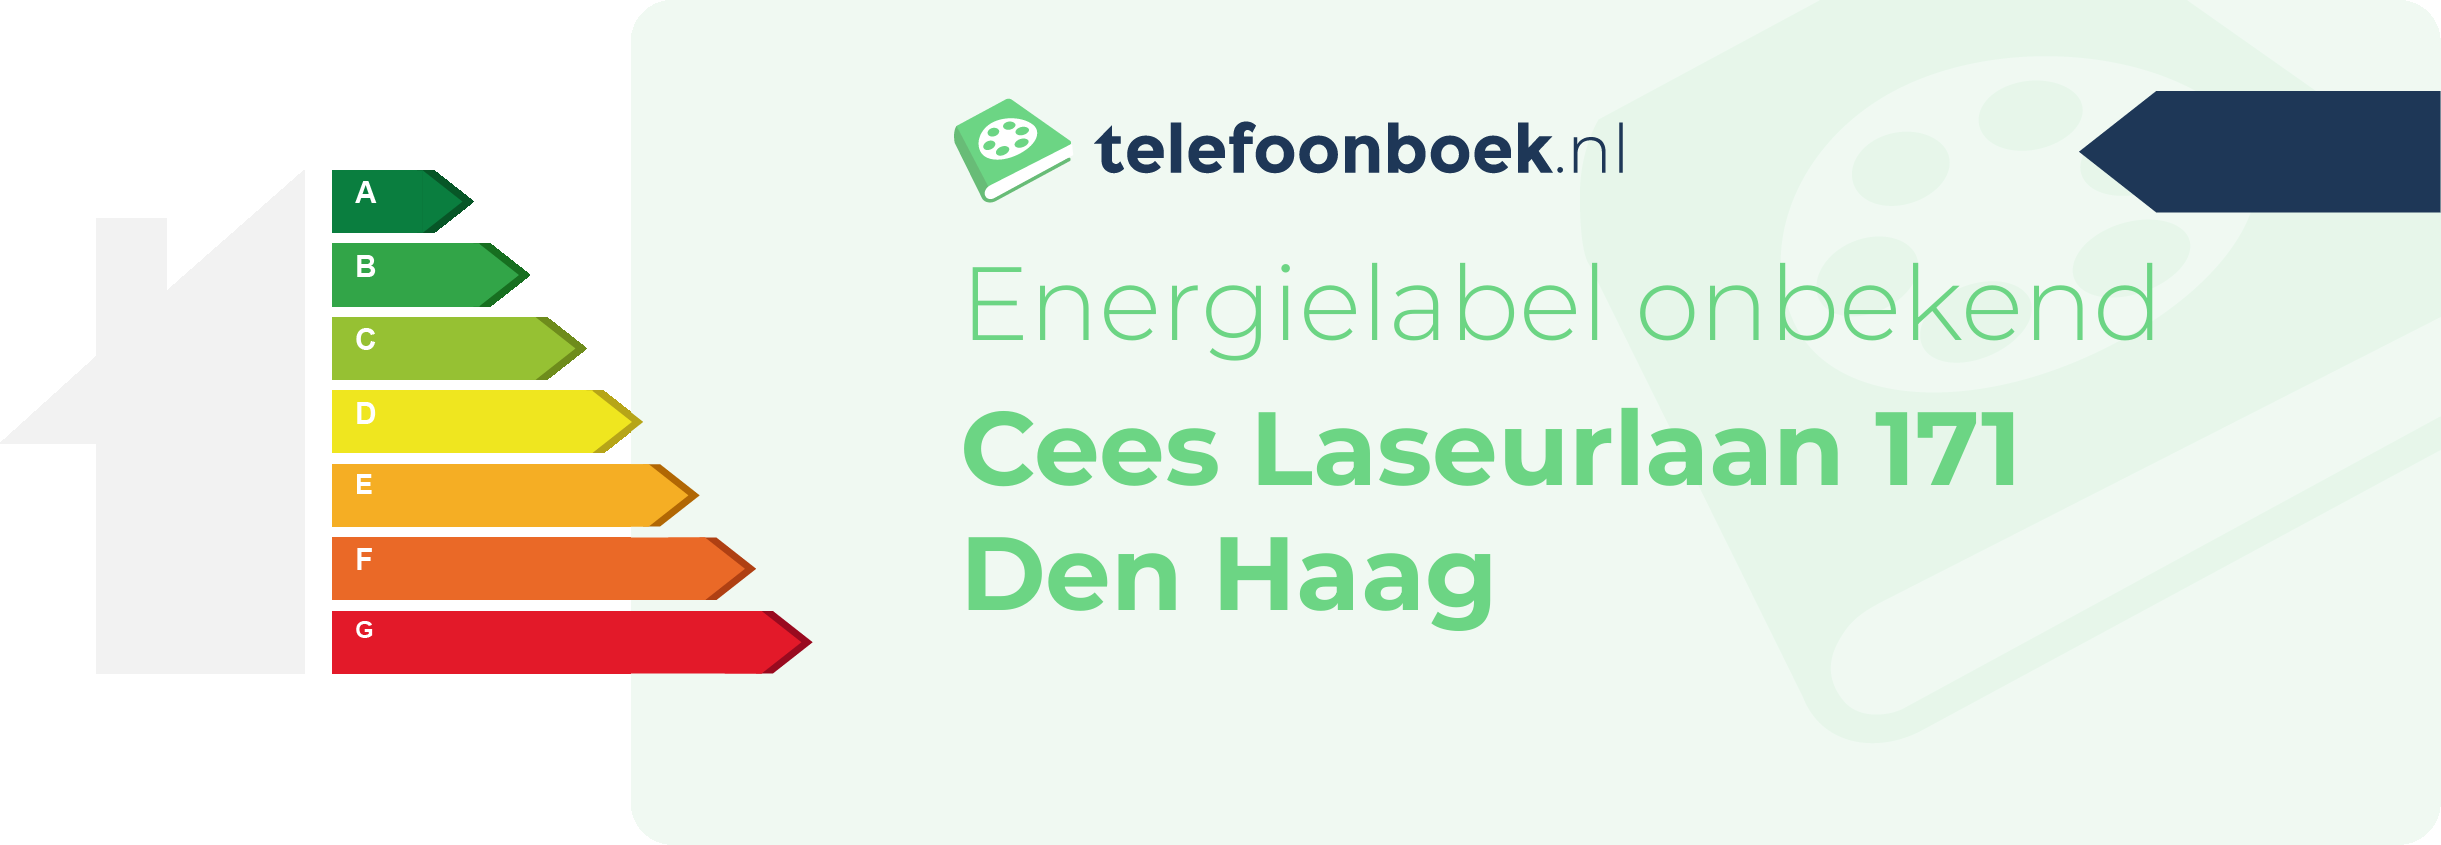 Energielabel Cees Laseurlaan 171 Den Haag